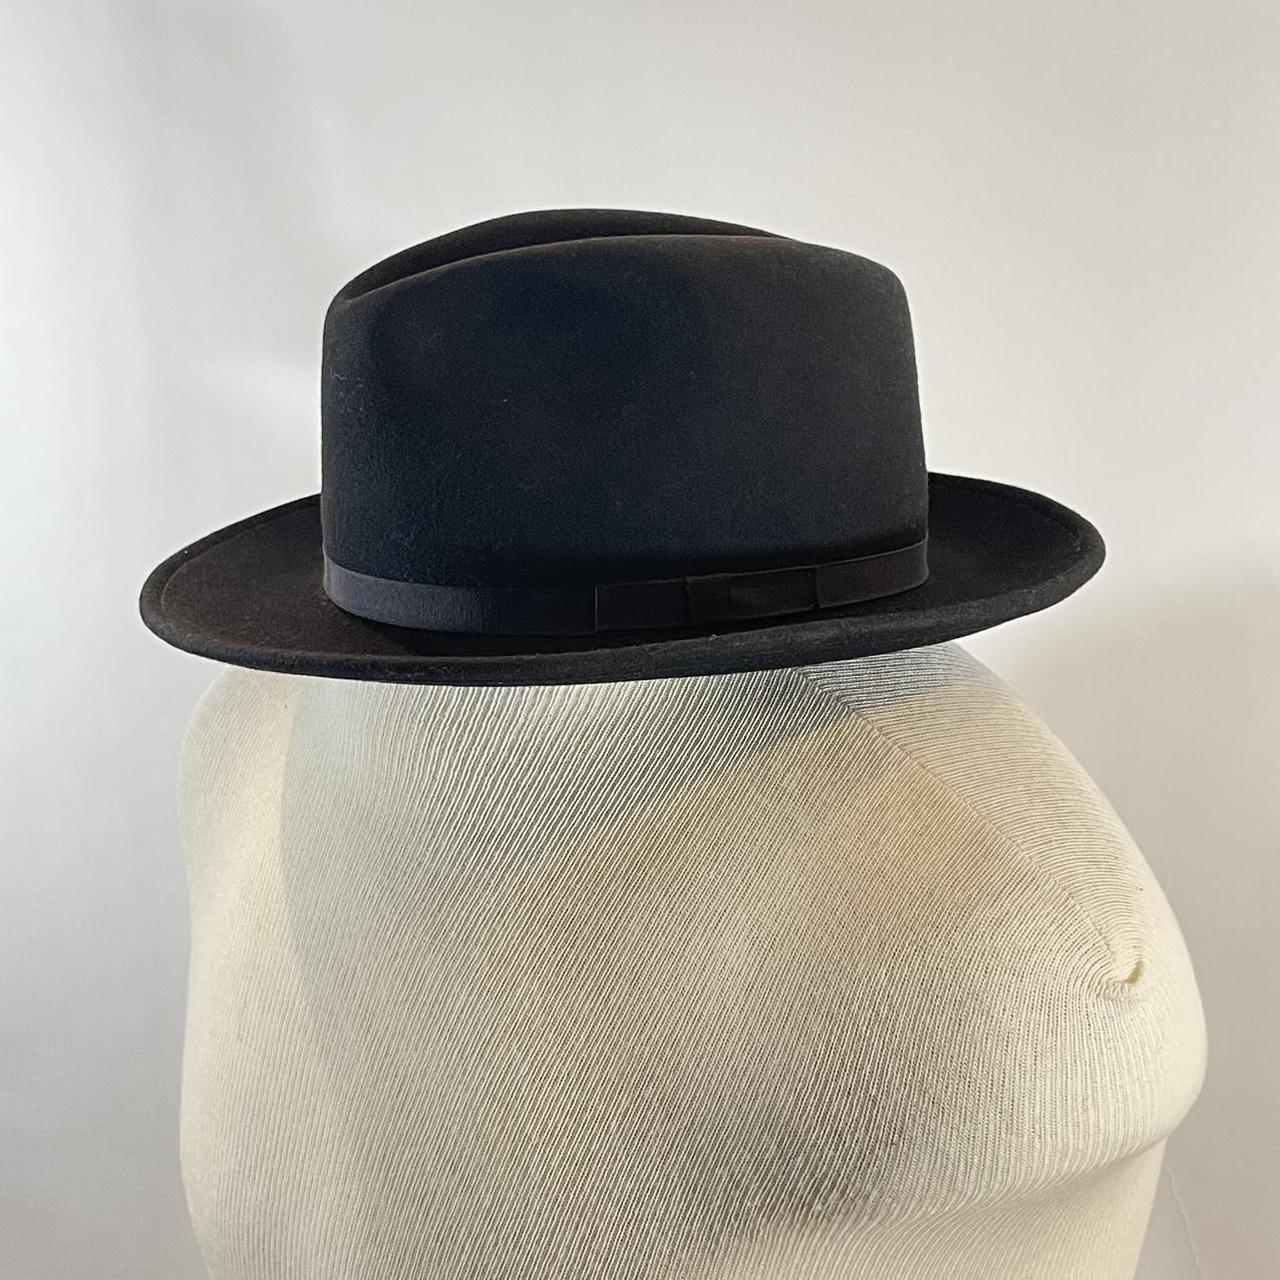 Country Gentleman Men's Black Hat (6)